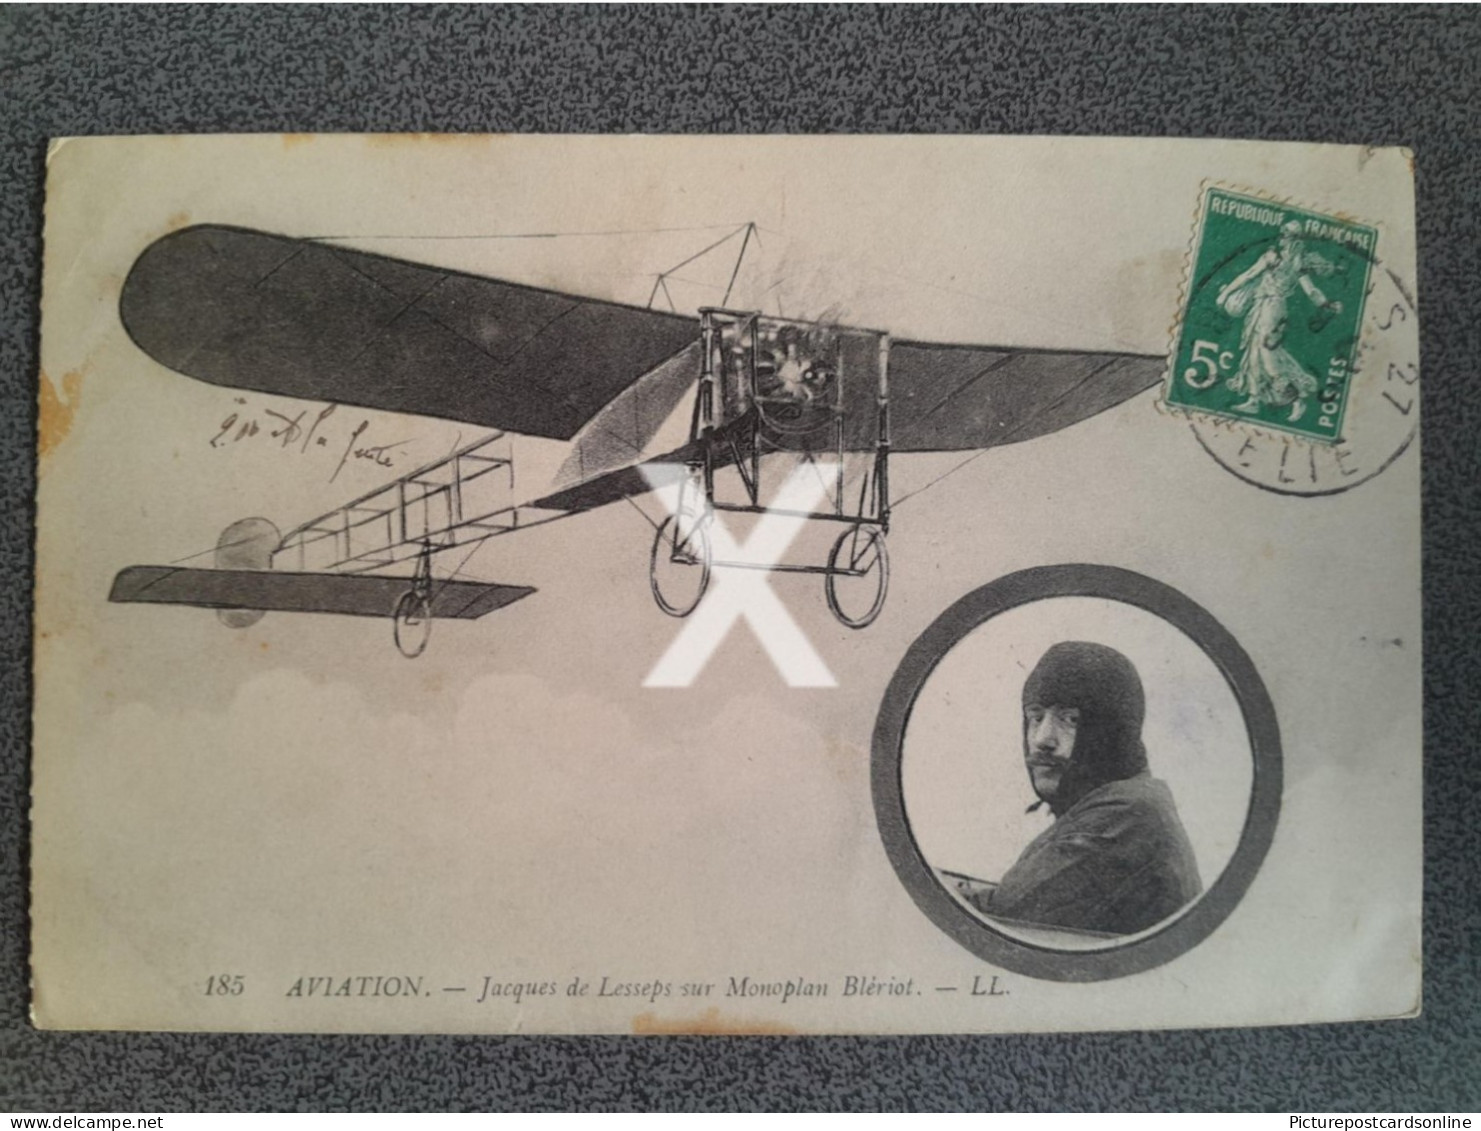 AVIATION JACQUES DE LESSEPS SUR MONOPLAN BLERIOT OLD B/W POSTCARD MONOPLANE FRANCE PILOT - ....-1914: Precursors